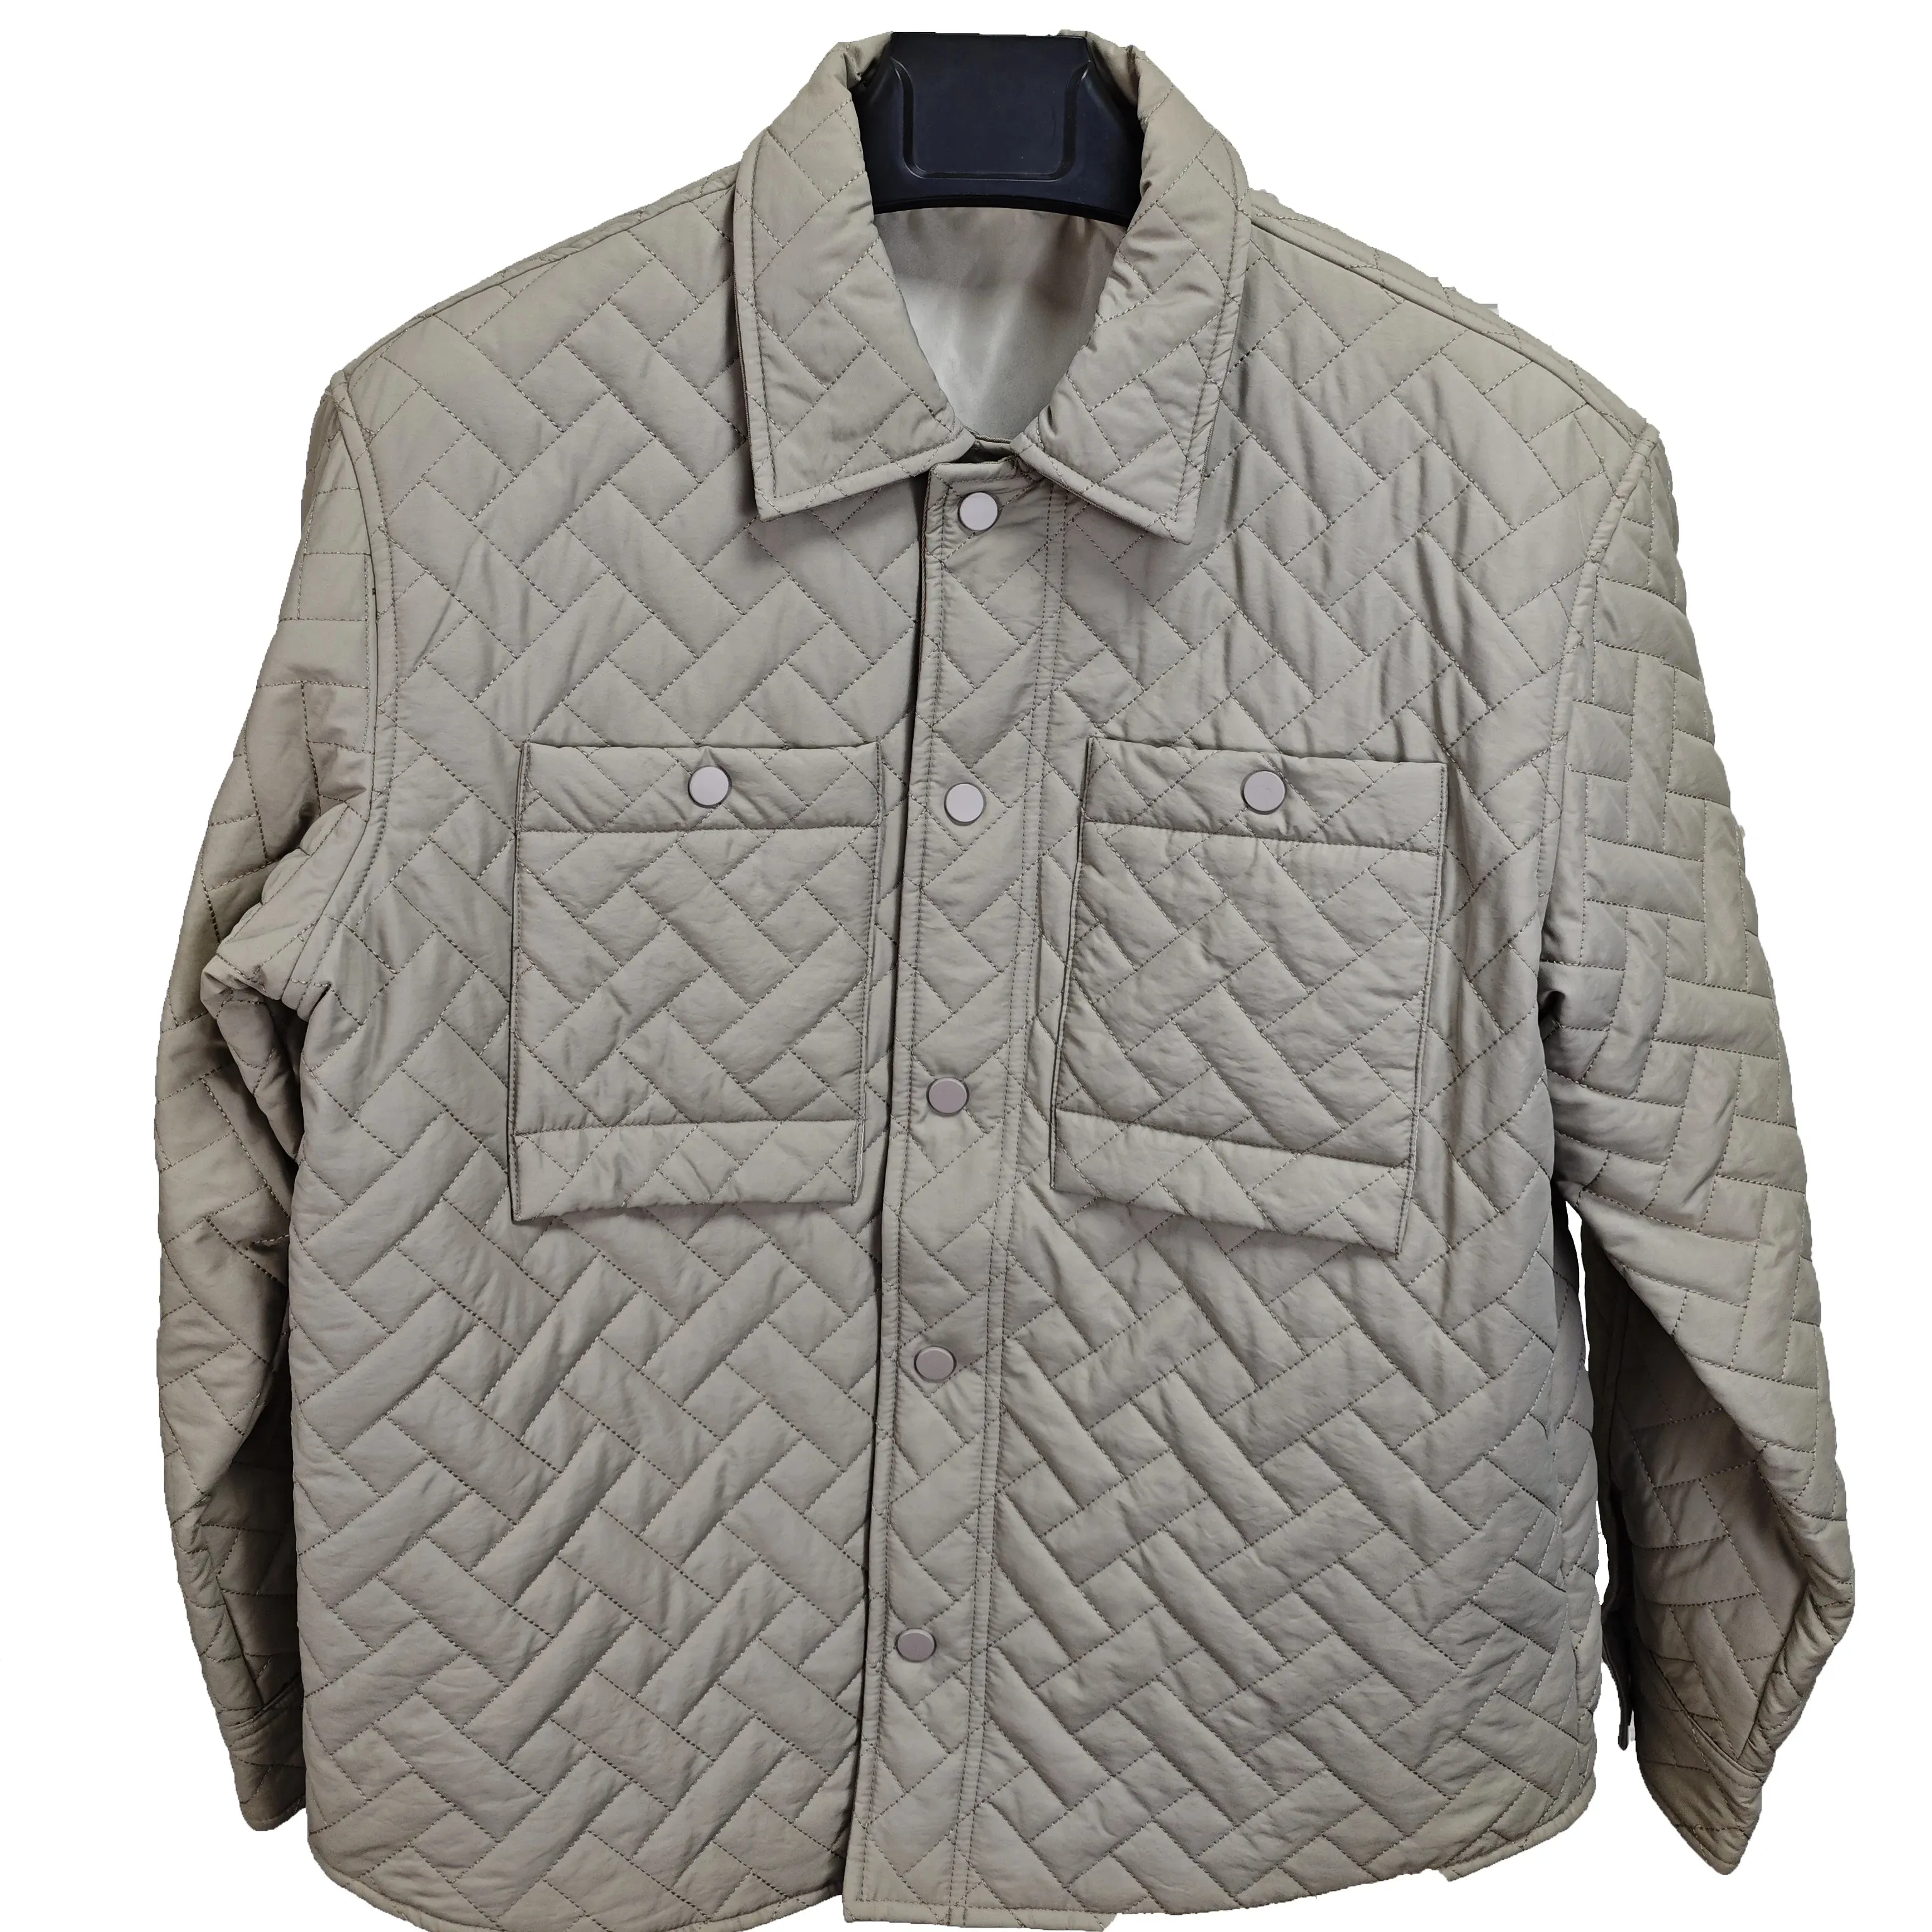 Toptan en çok satan hafif sıcak ördek aşağı ceketler özel logo boş ceket ilkbahar ve sonbahar erkek ceket